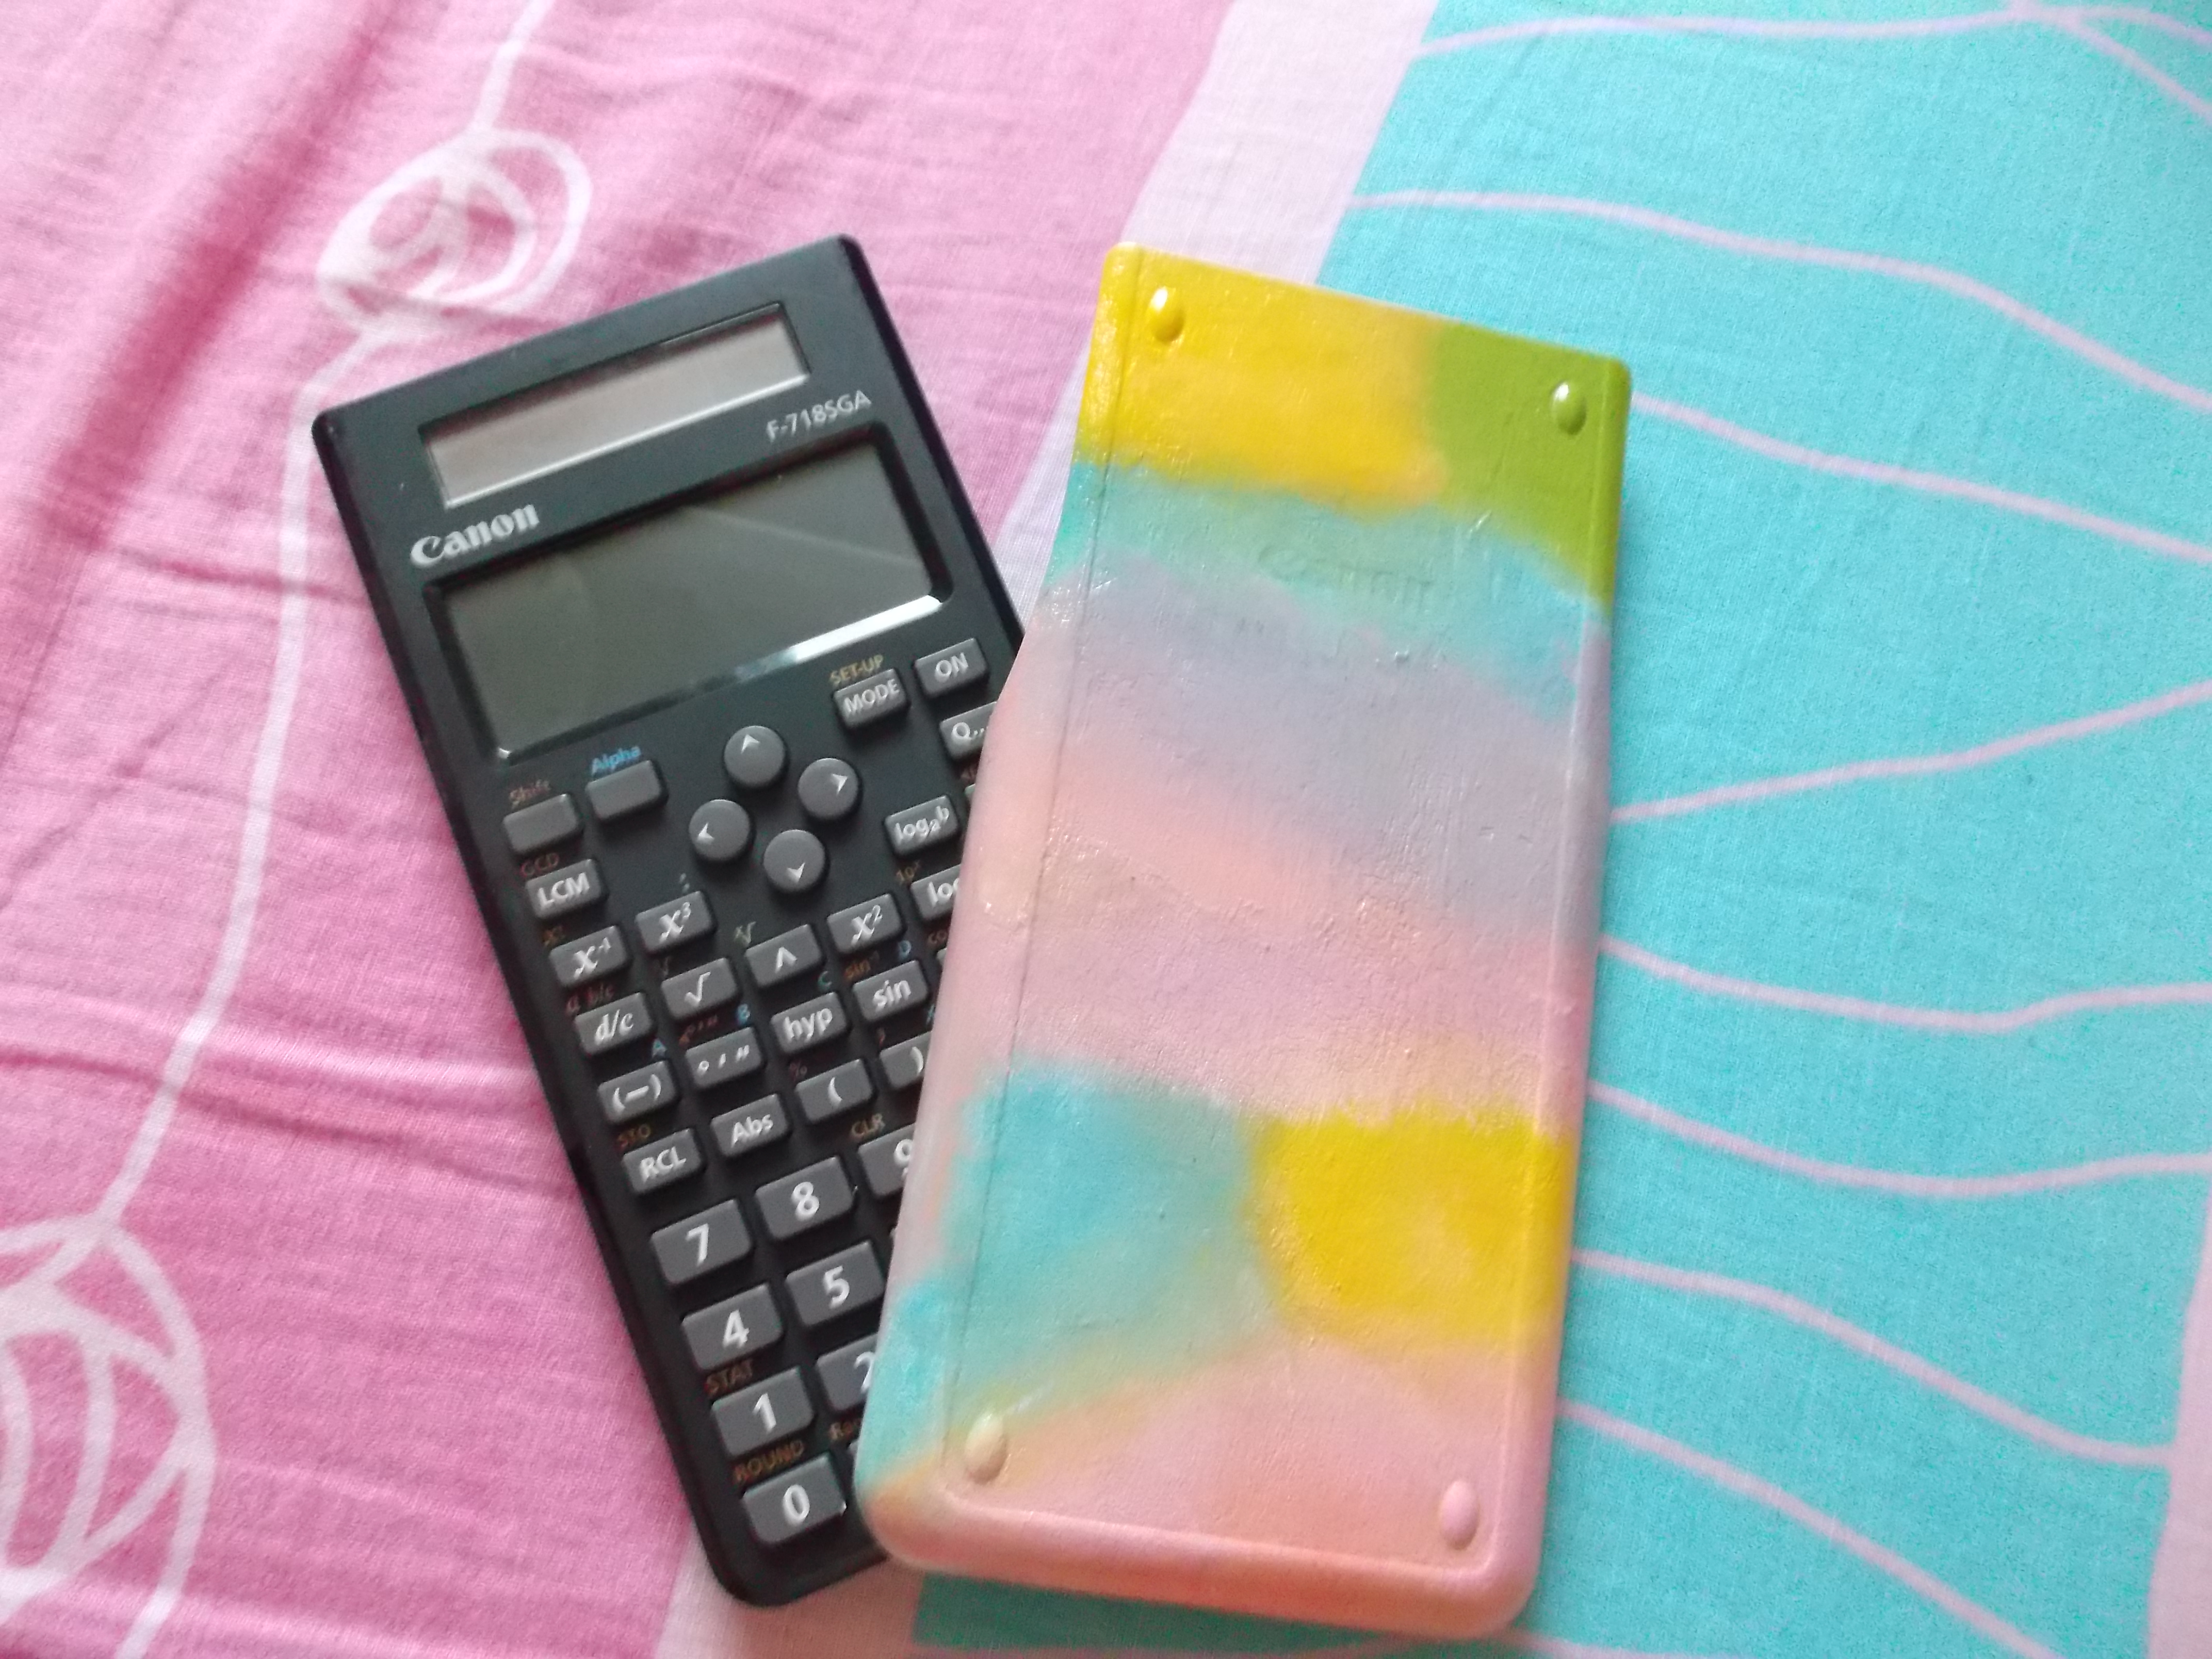 DIY décorer sa calculatrice facilement - So cute